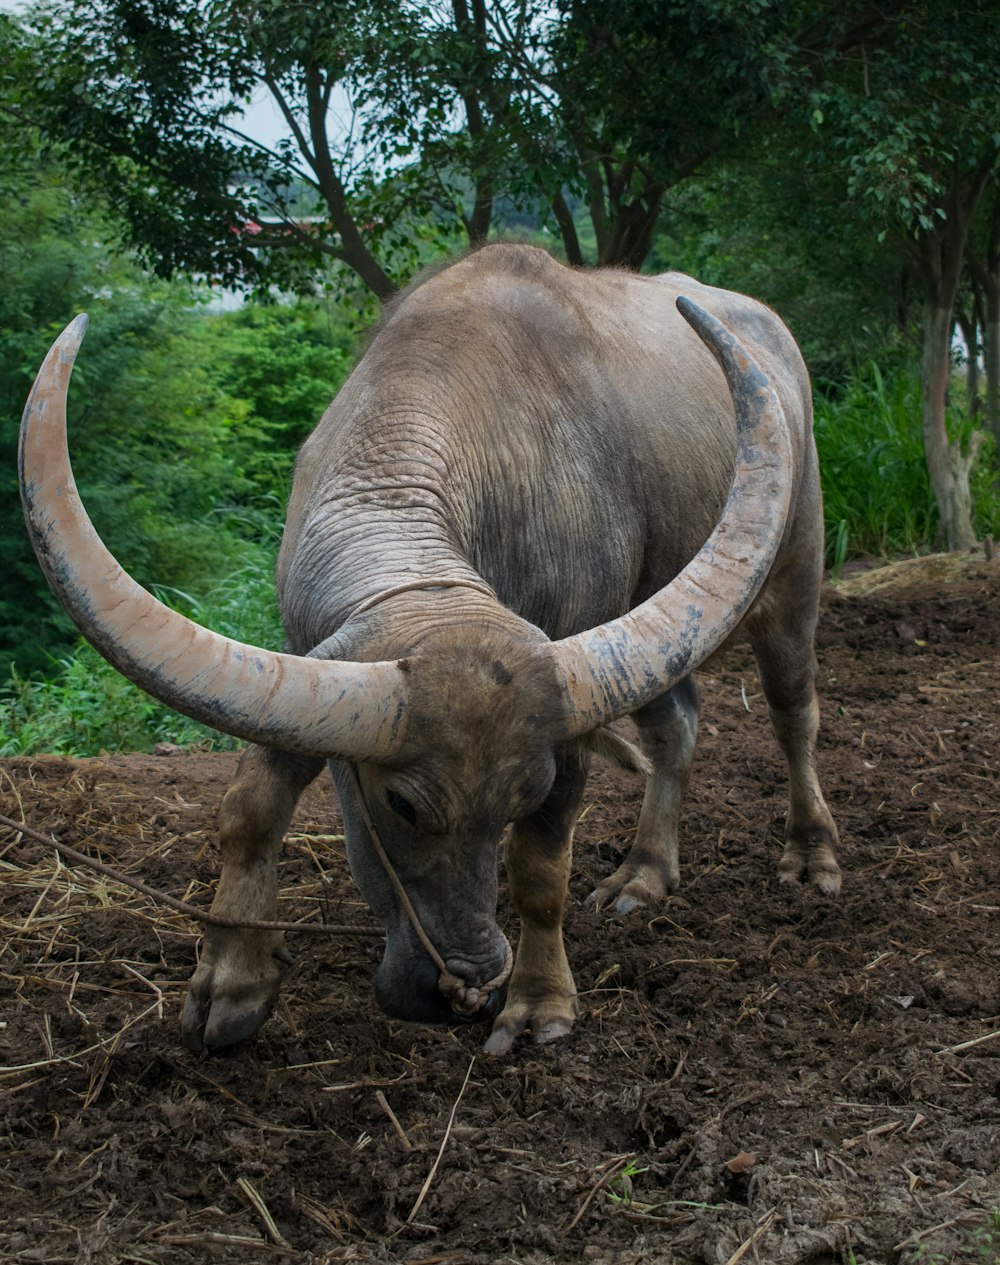 black water buffalo on brown soil during daytime